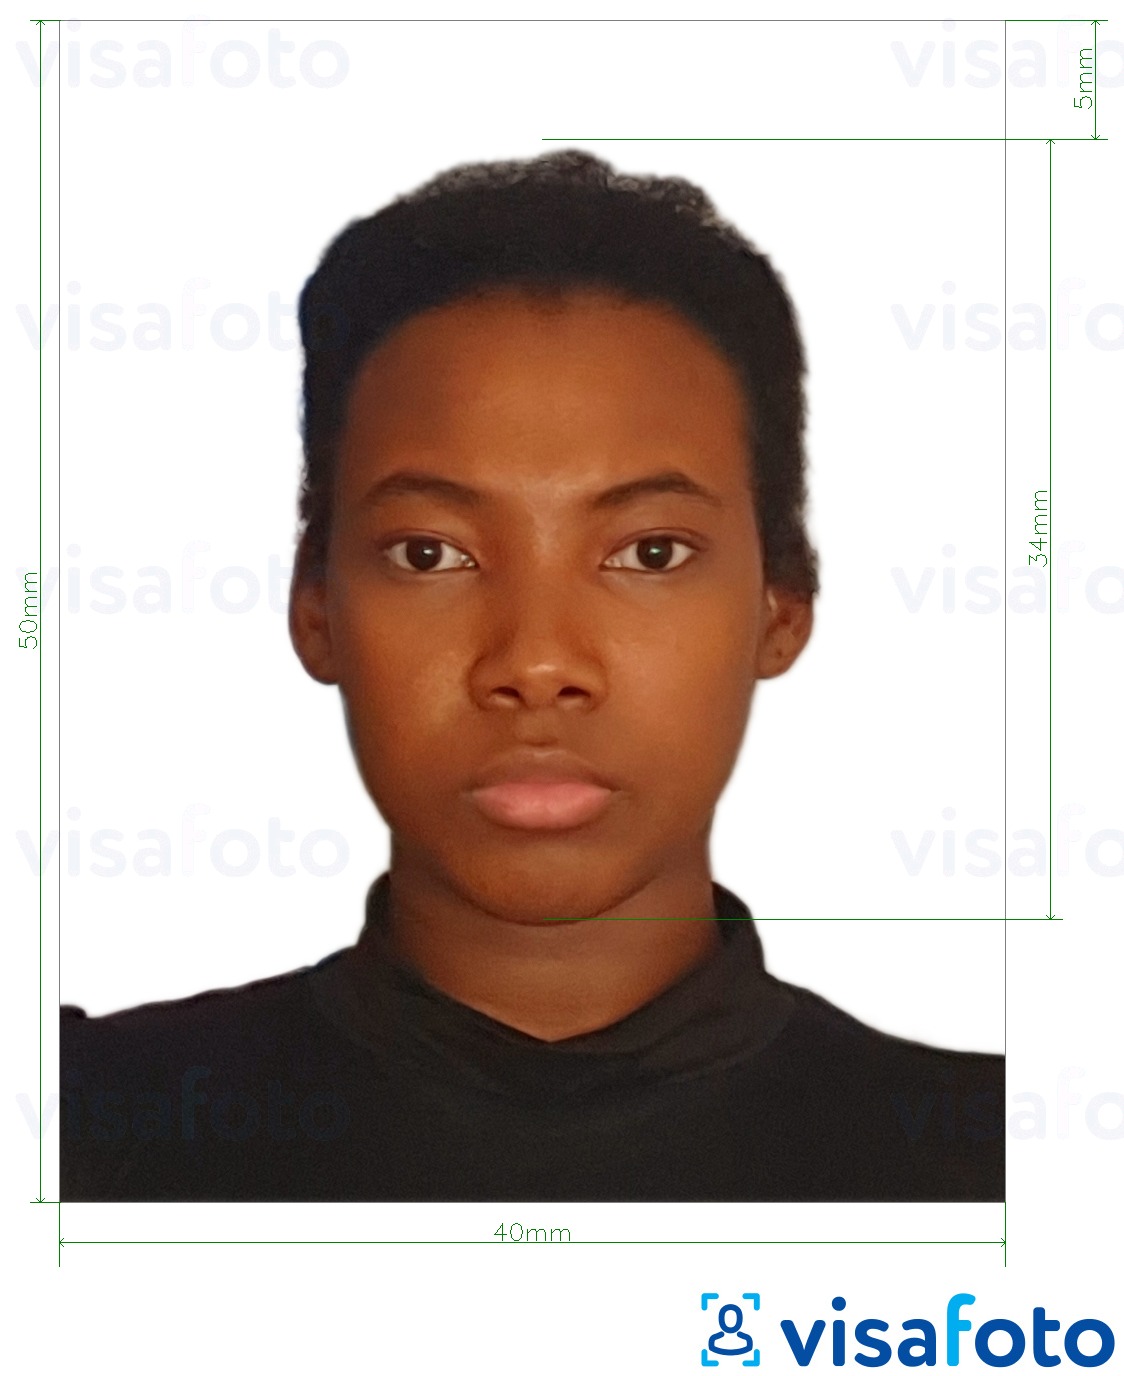 Contoh foto untuk Visa Republik Dominican 4x5 cm dengan spesifikasi saiz yang tepat.